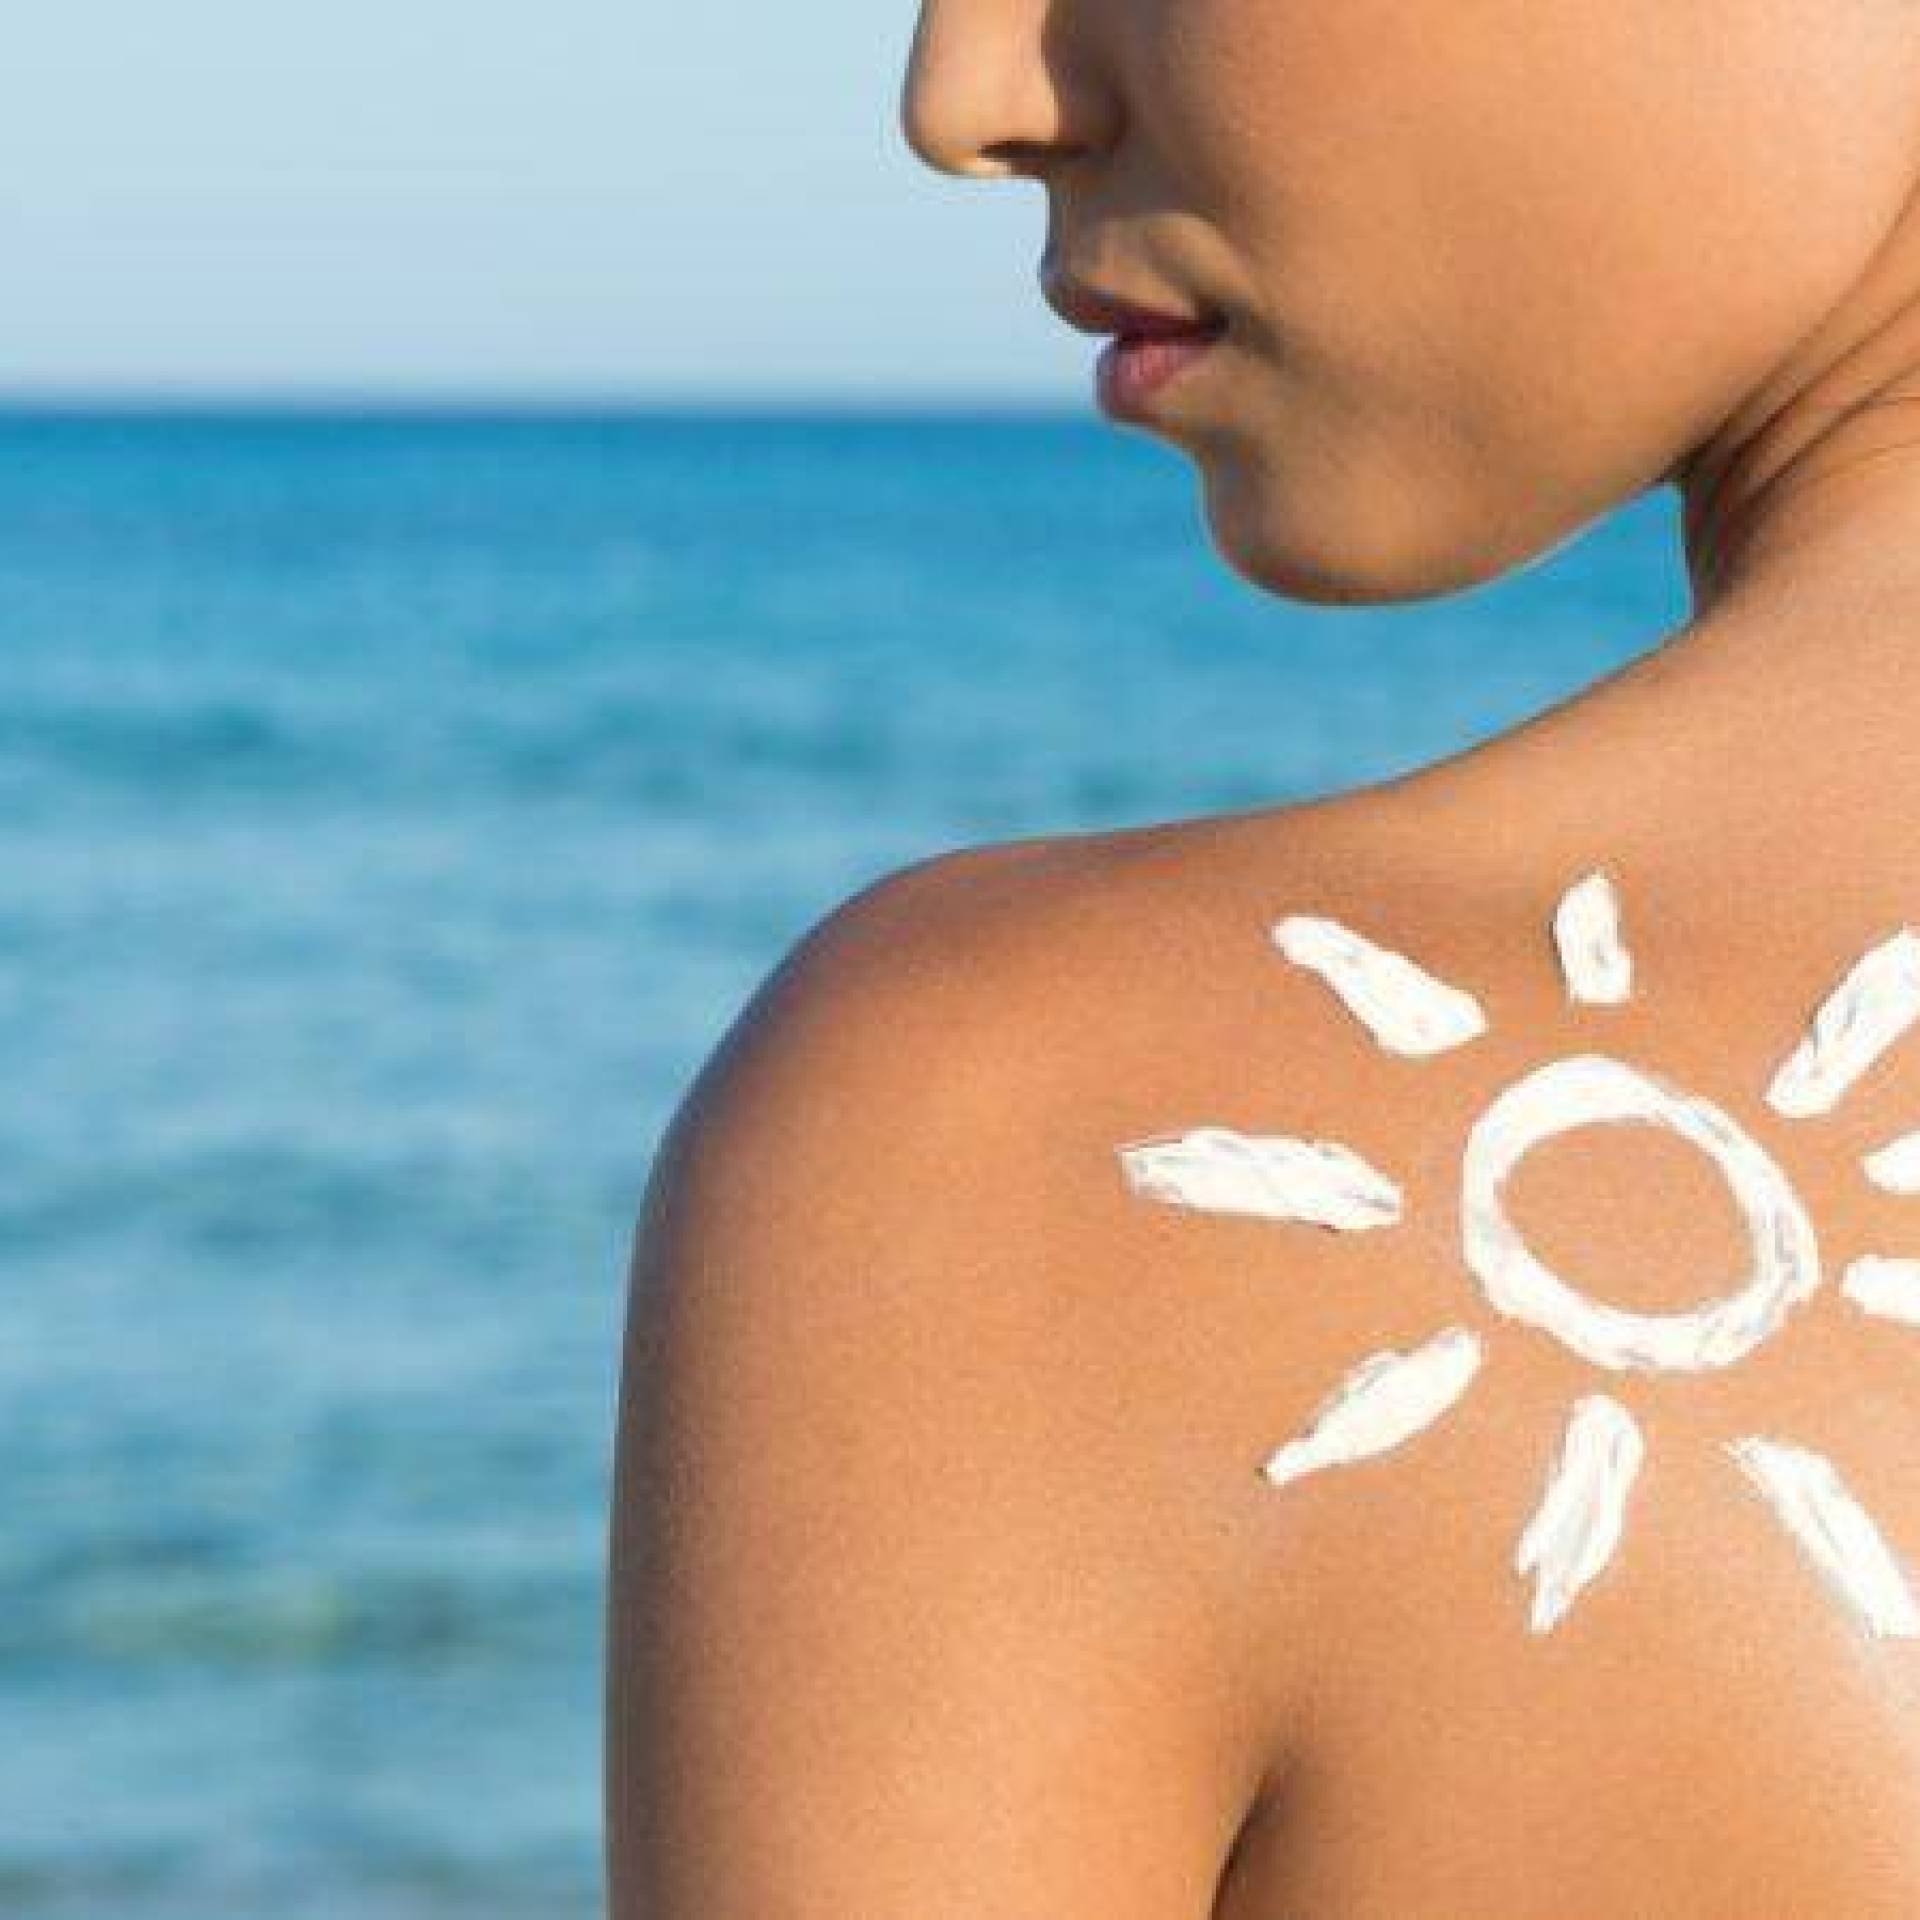 Ochrona przed słońcem: jak uniknąć poparzeń skóry podczas plażowania